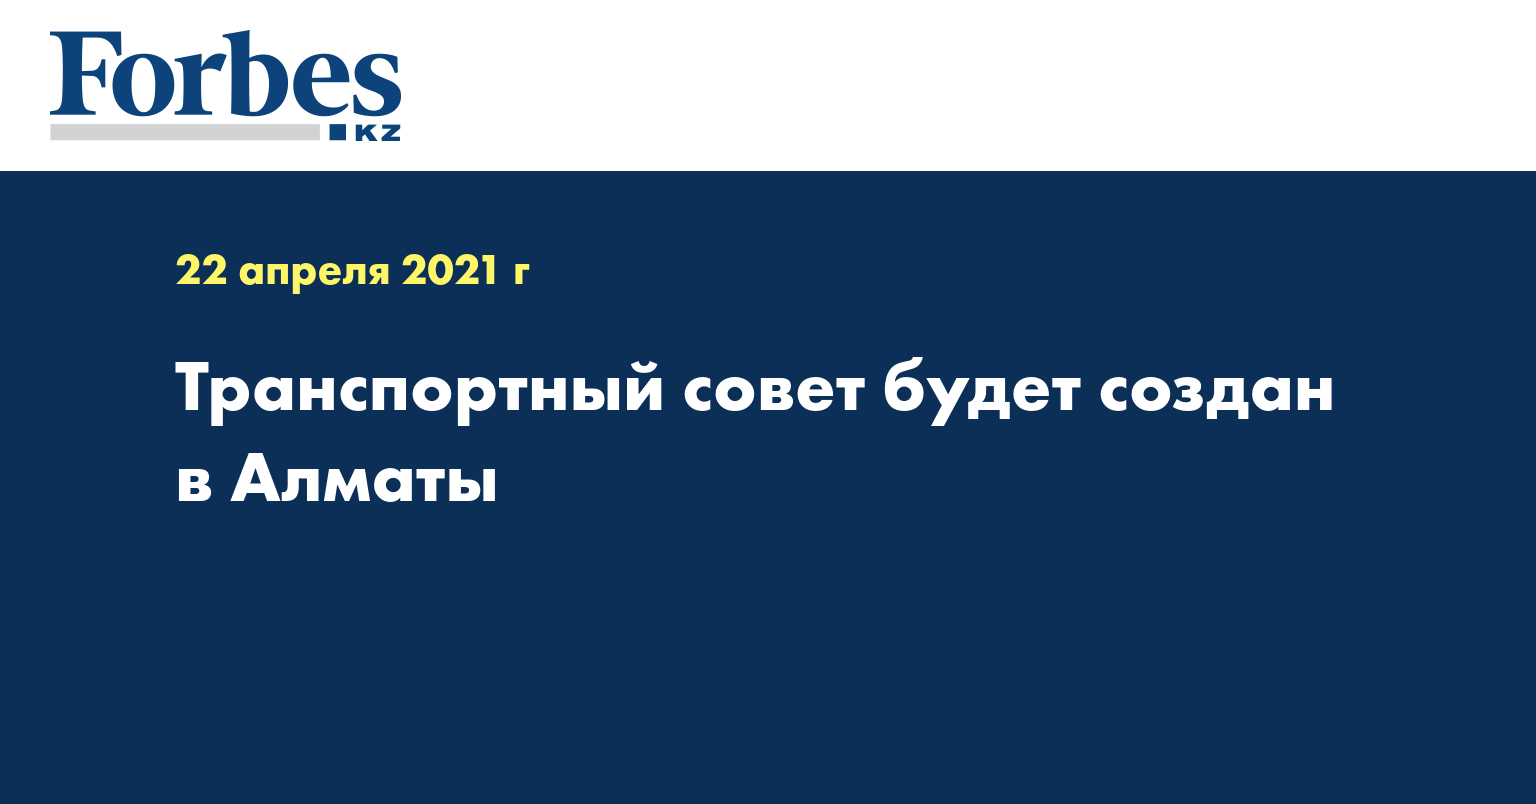  Транспортный совет будет создан в Алматы